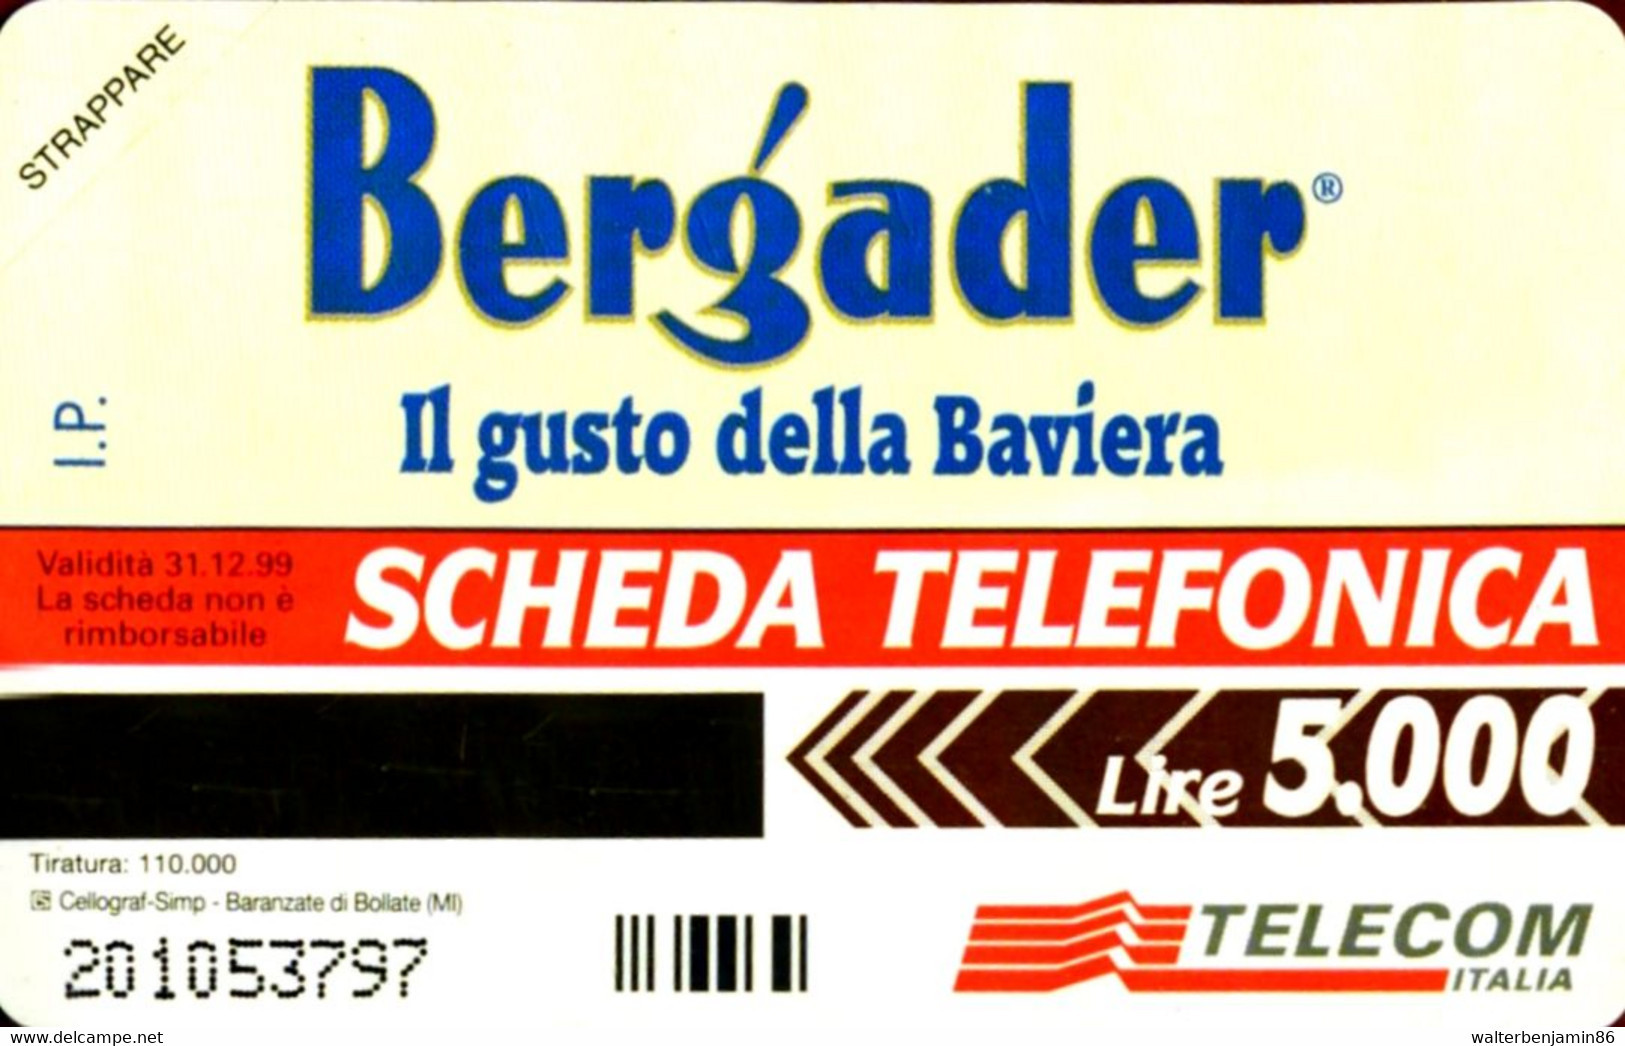 G 691 C&C 2759 SCHEDA TELEFONICA NUOVA MAGNETIZZATA BERGADER - Openbaar Speciaal Over Herdenking